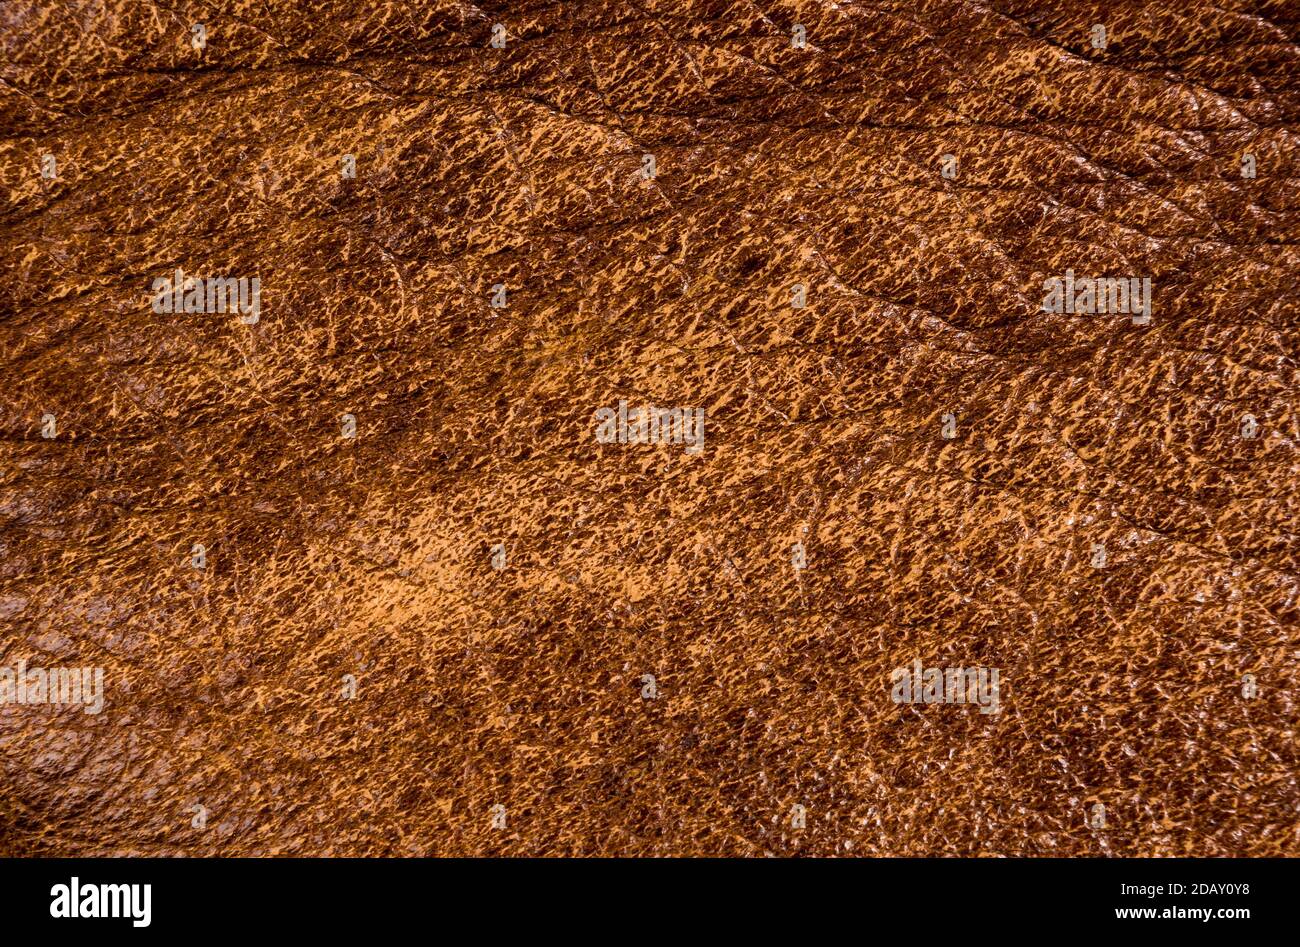 Old vintage genuino cuero marrón suave textura del fondo de la capa superior con poros y arañazos, macro Foto de stock